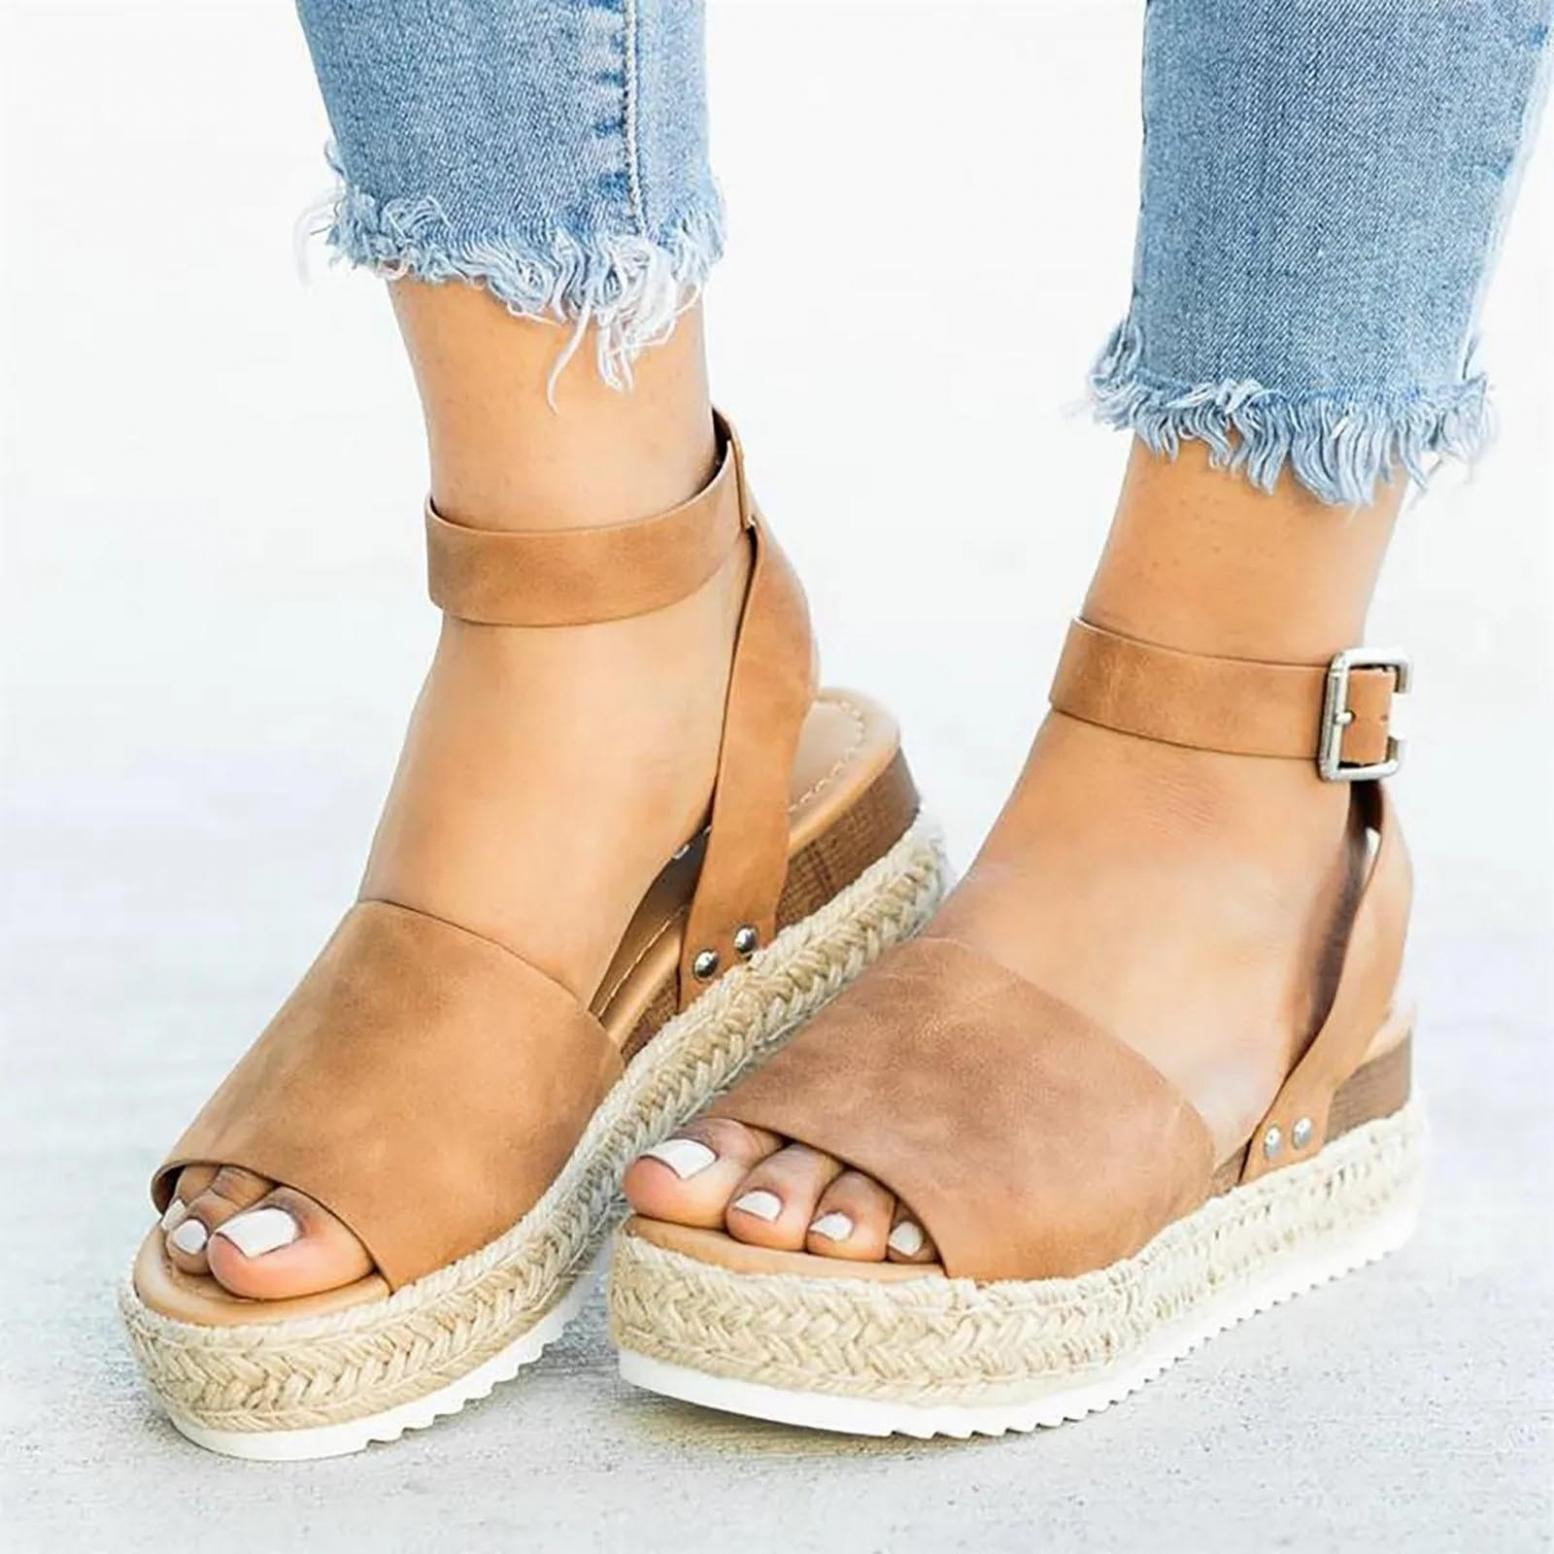 Platform Sandals for Women Comfort Espadrille Flatform Sandal Casual Stretch Ankle Strap Shoes Dressy Vintage Closed Toe Sandals 